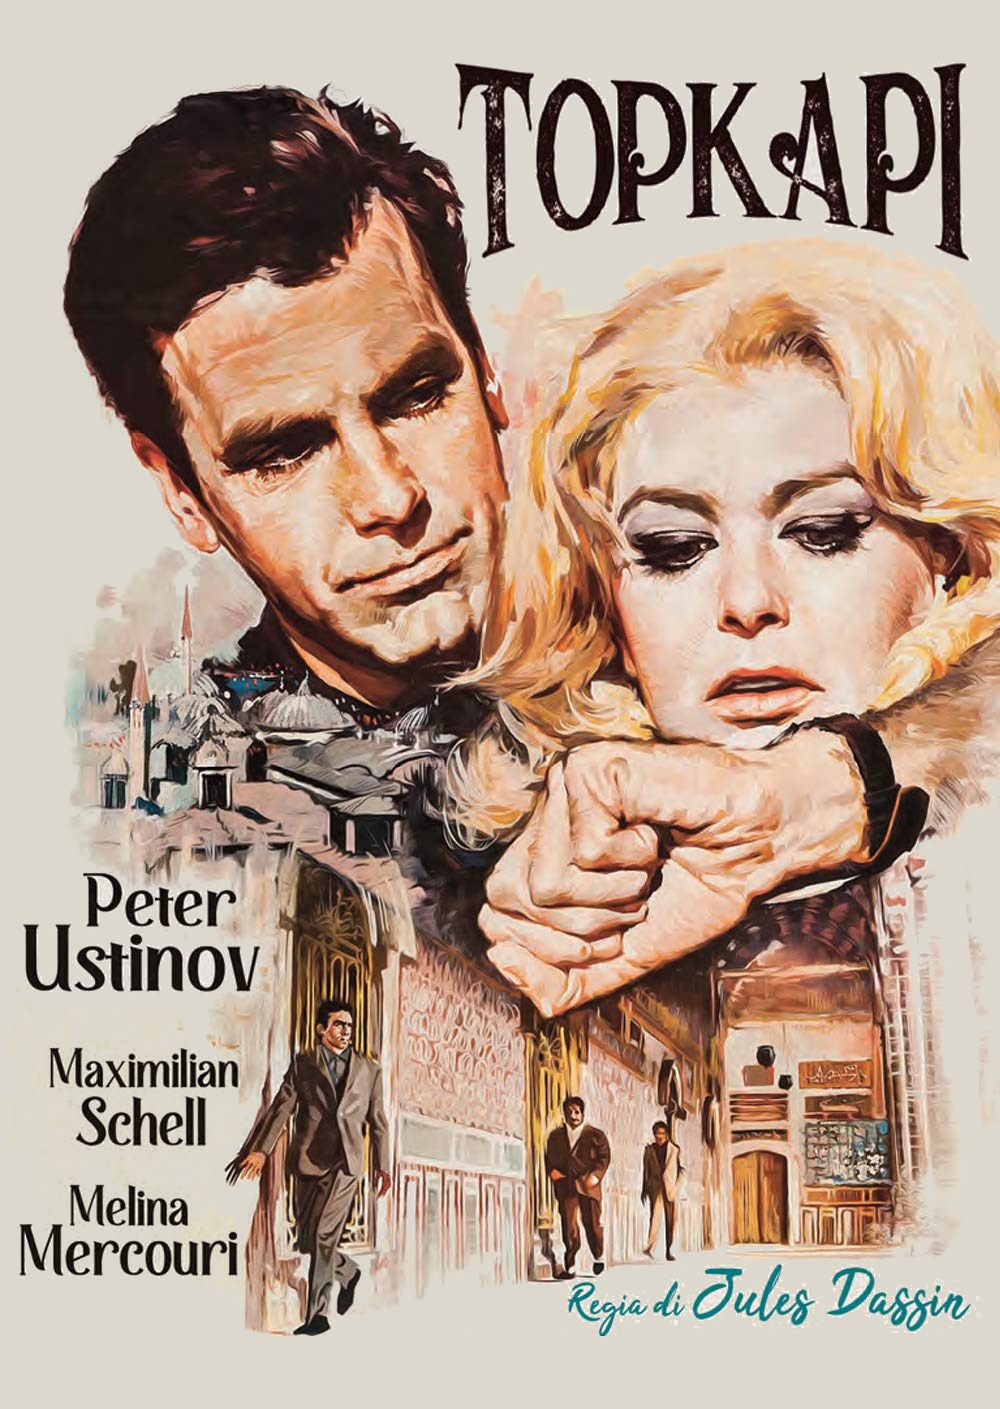 Topkapi [HD] (1964)